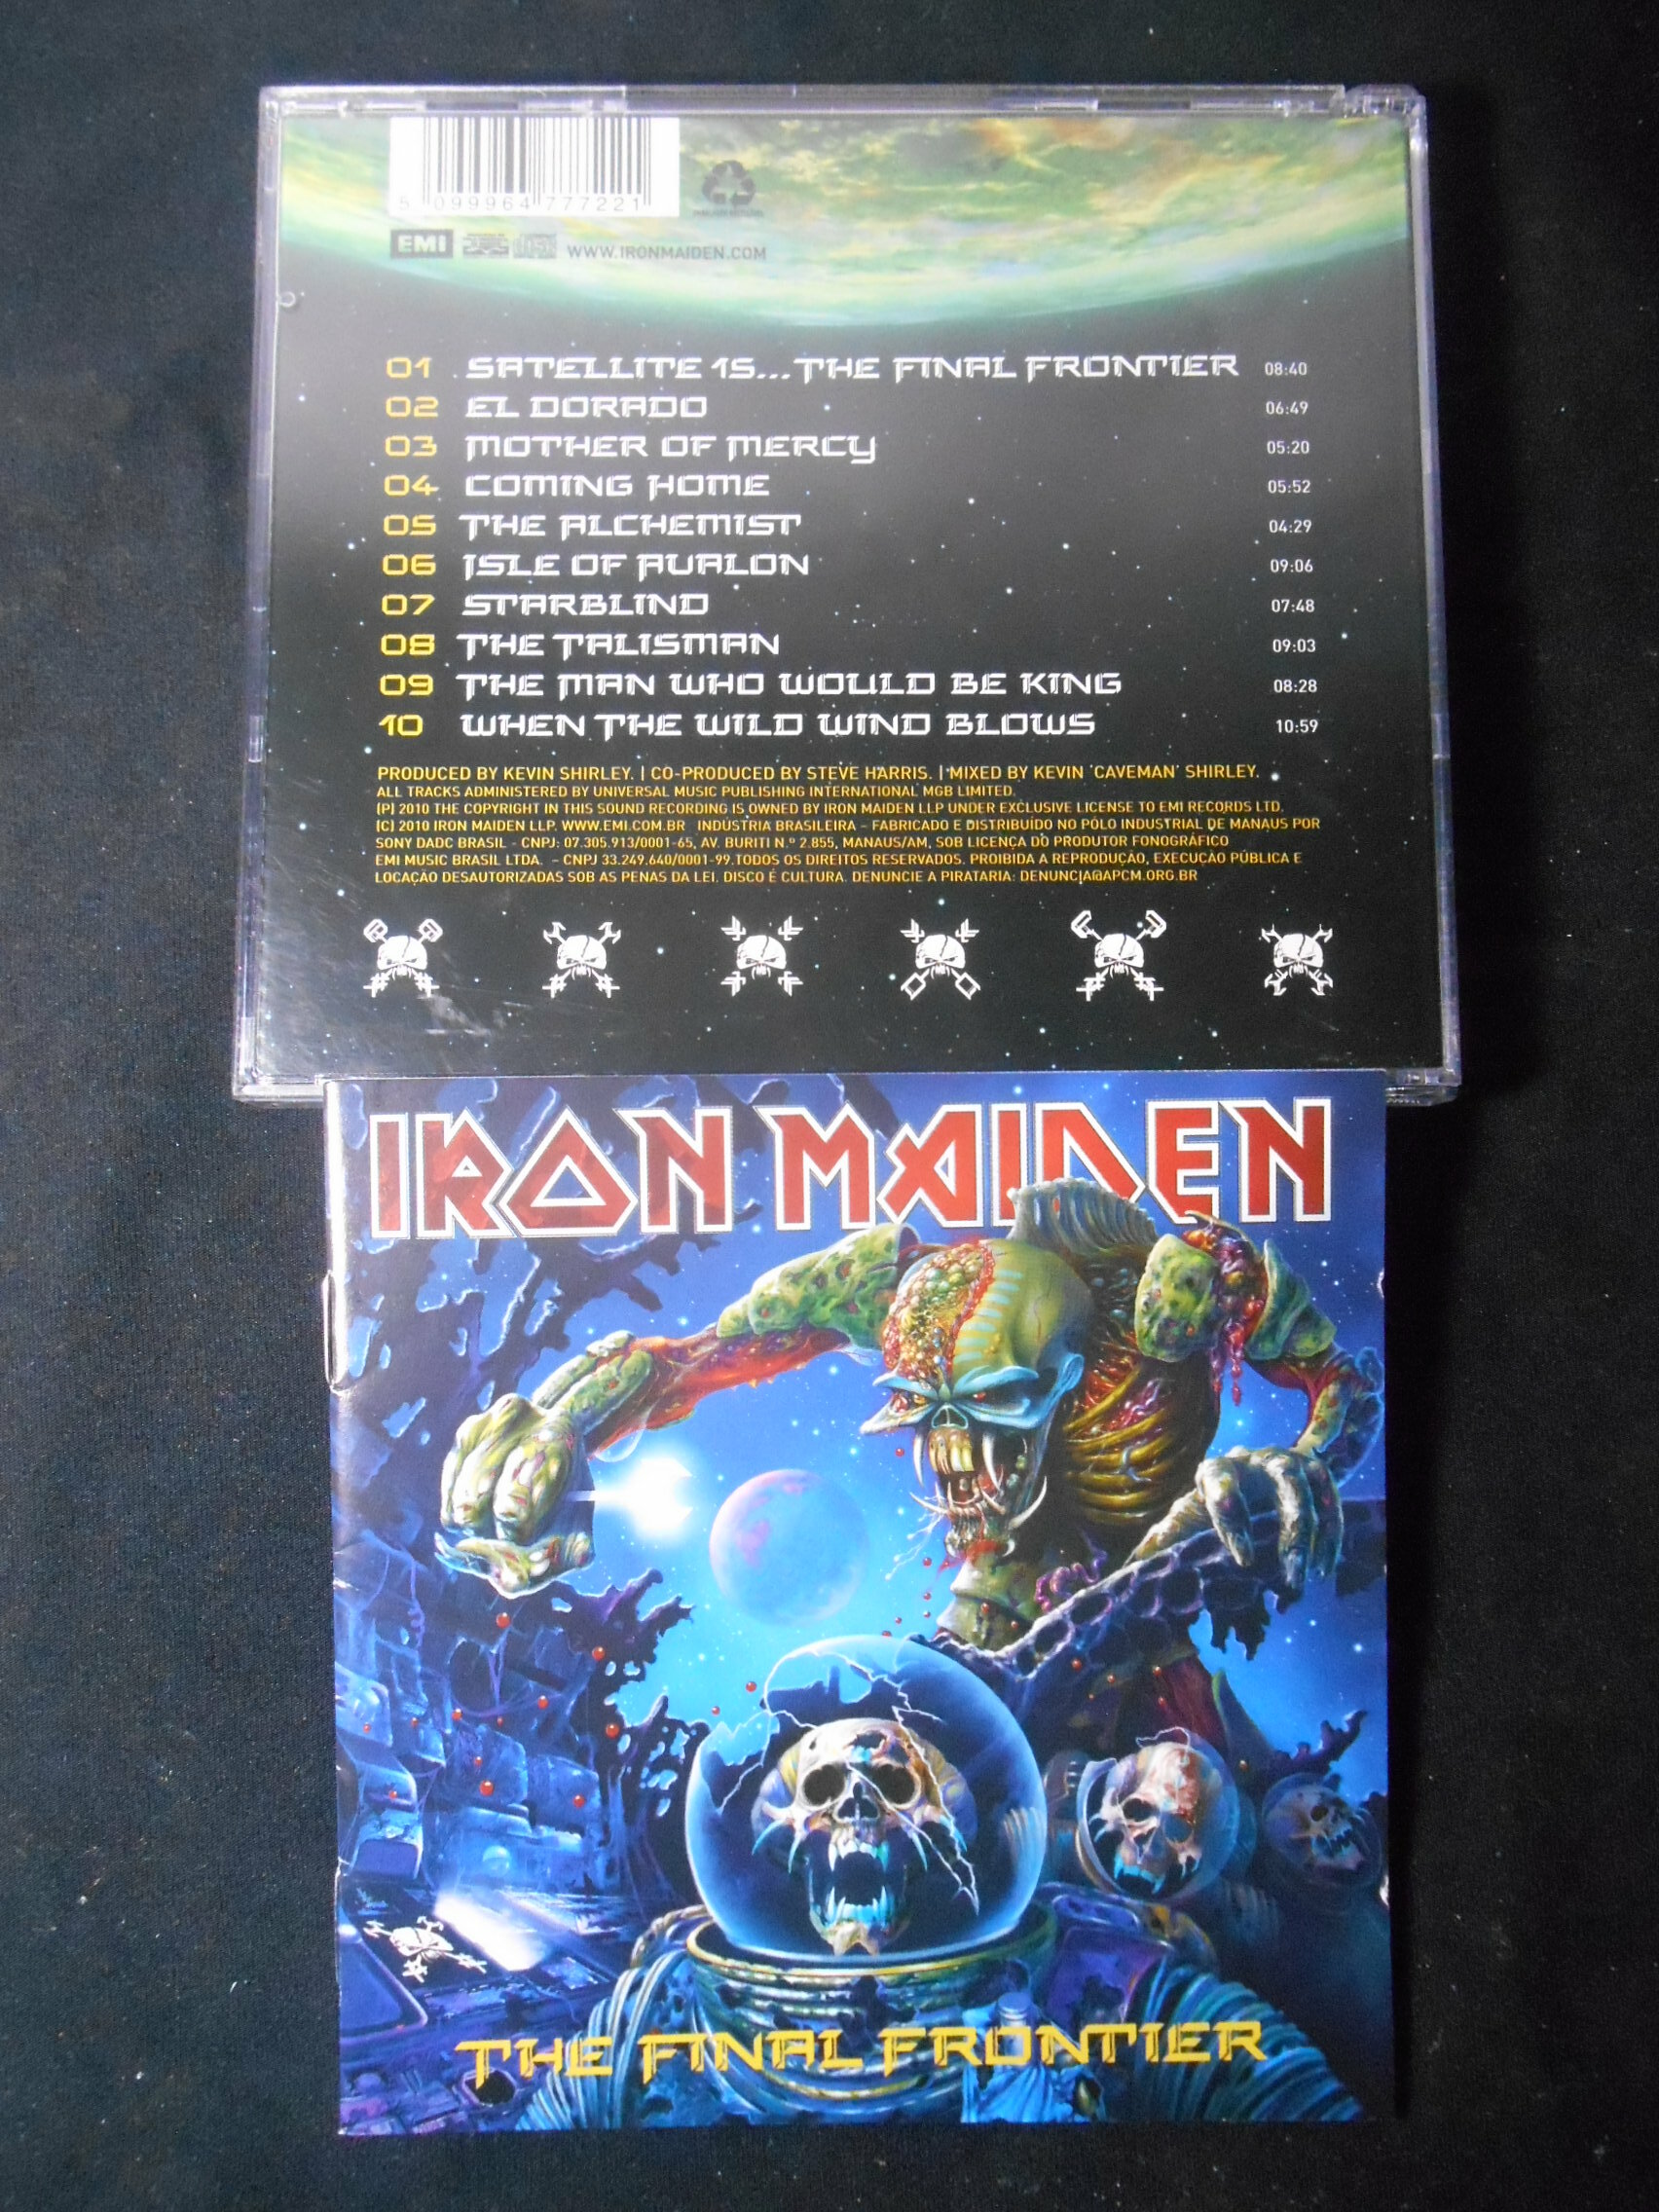 CD - Iron Maiden - the Final Frontier (acrilico)